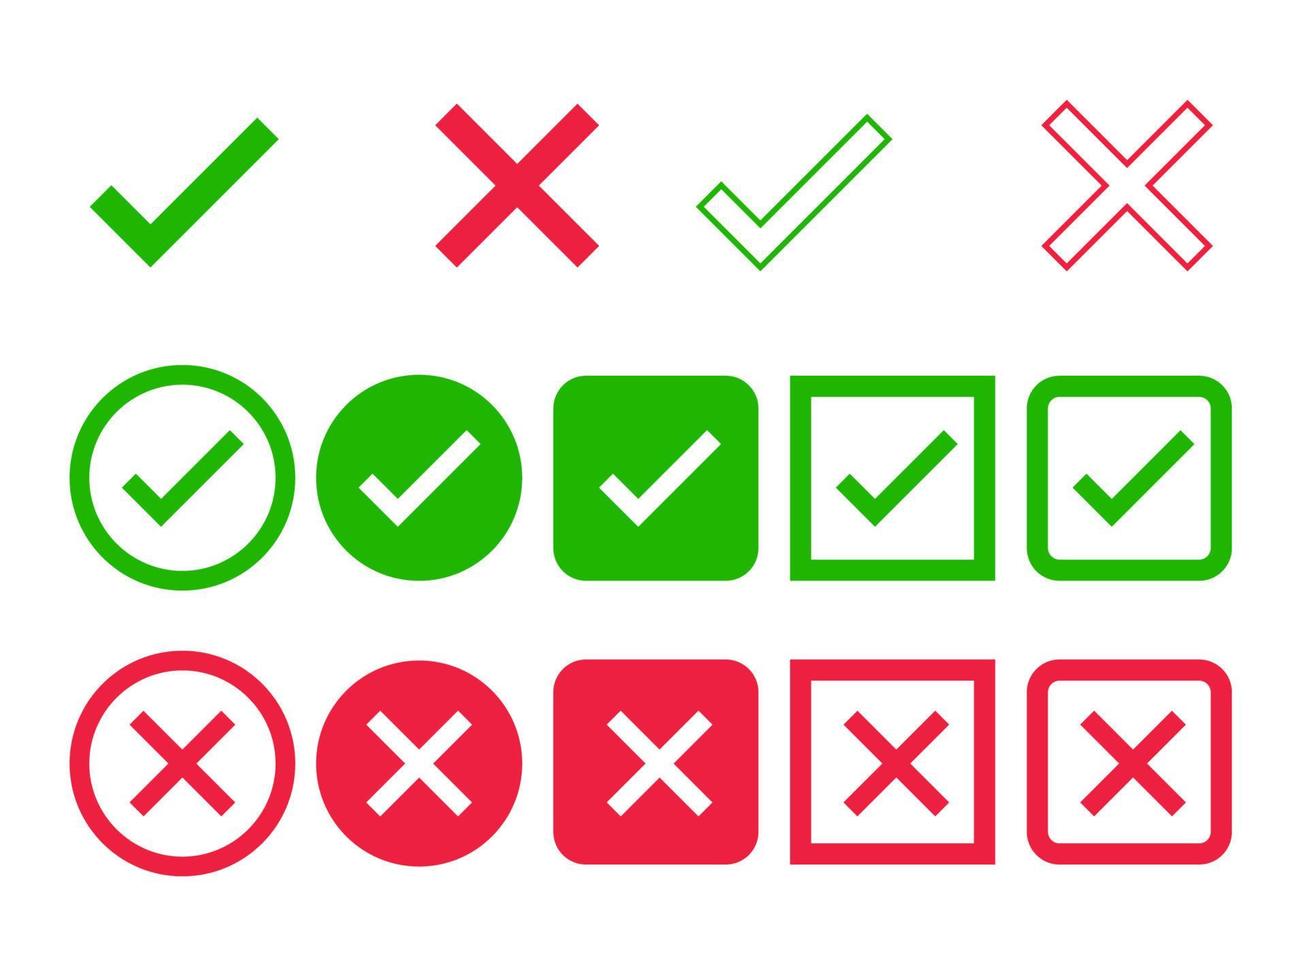 verde Verifica ou certo verificar, vermelho Verifica ou Cruz Verifica vetor ícone